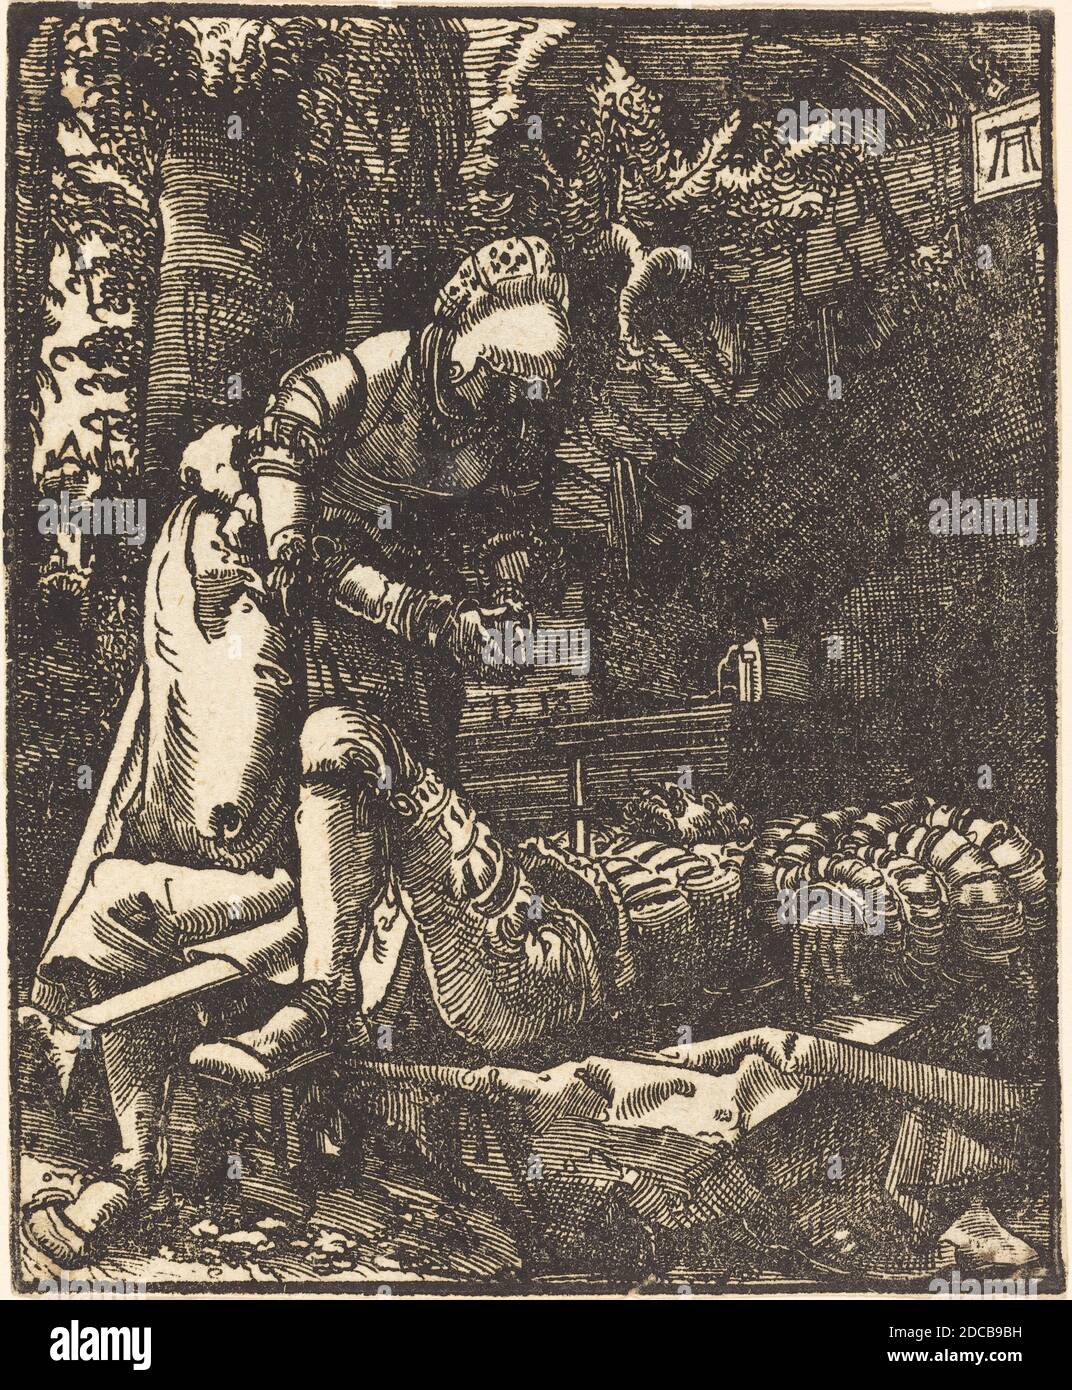 Albrecht Altdorfer, (artiste), allemand, 1480 ou avant - 1538, Pyramus et Thisbe, 1513, coupe de bois, feuille: 12.2 x 10 cm (4 13/16 x 3 15/16 po Banque D'Images